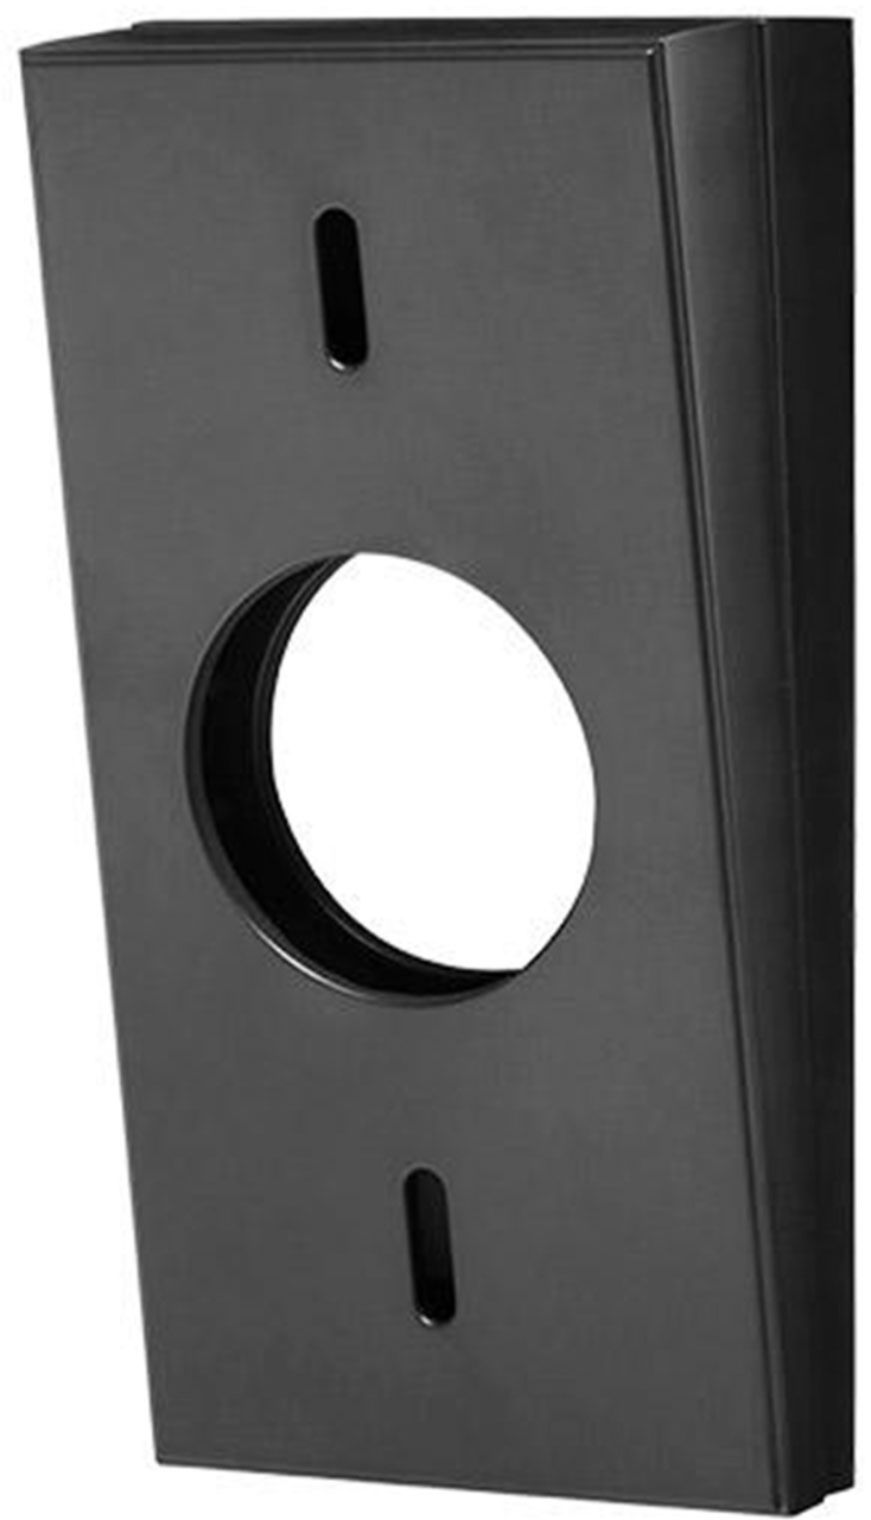 Ring Video Doorbell 2 Wedge Kit Black 842861100884 eBay